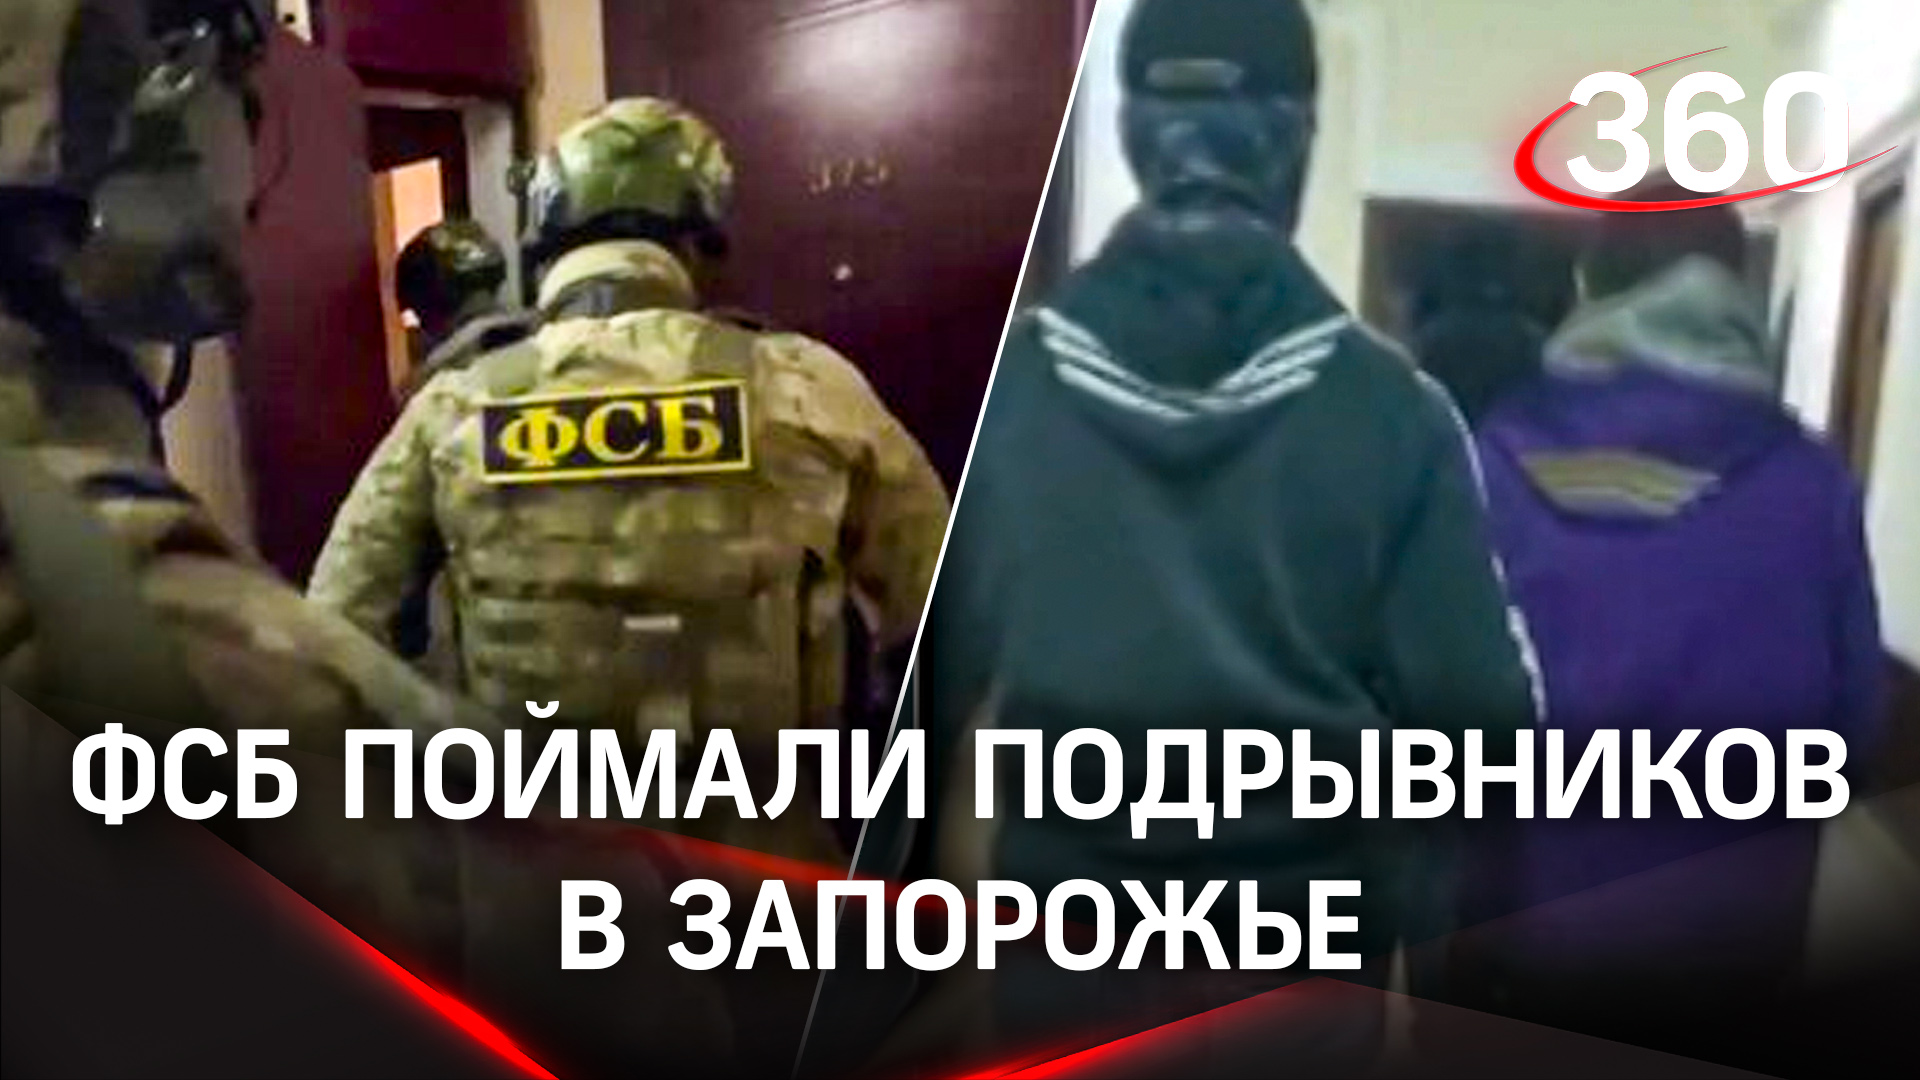 Новая диверсия - ФСБ поймали подрывников в Запорожье на пути к месту закладки взрывчатки